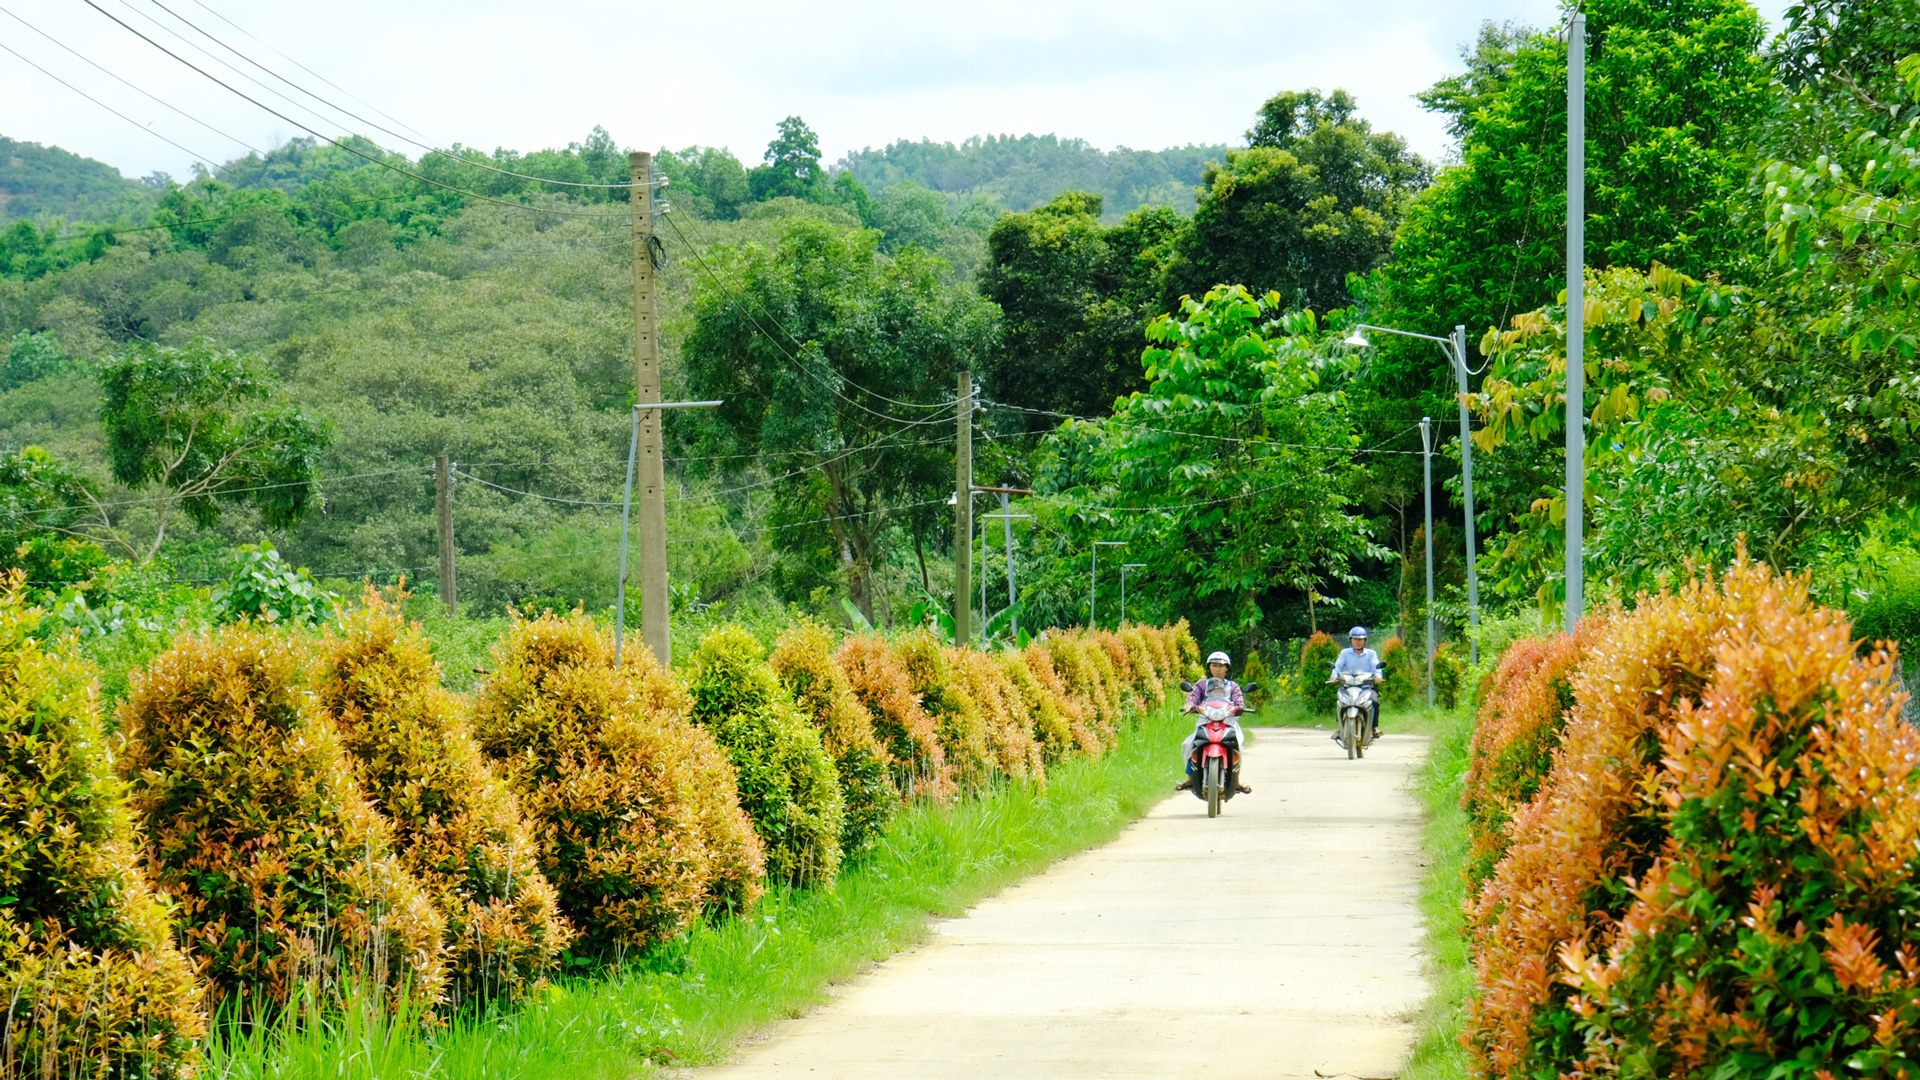 Người dân Cát Tiên tích cực tham gia trồng cây xanh, chỉnh trang nhà cửa, tiếp tục đóng góp xây dựng đường giao thông nông thôn